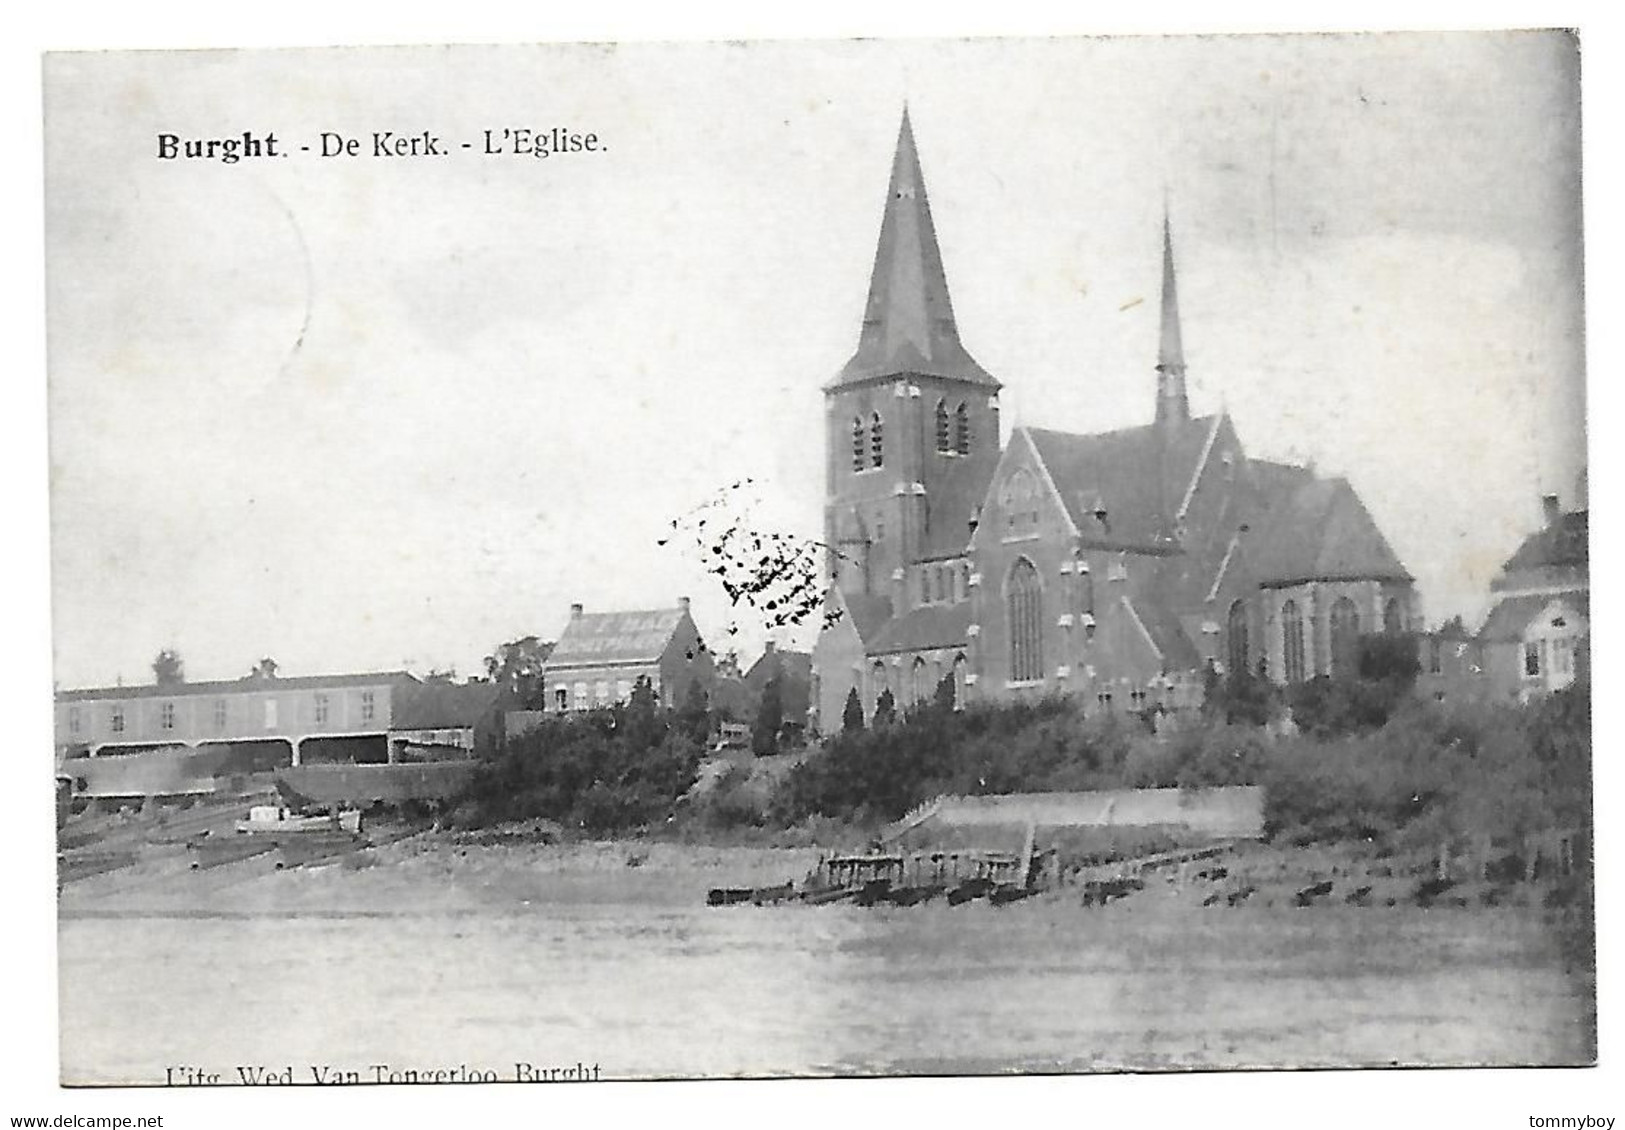 Burght - De Kerk - L'Eglise - Zwijndrecht